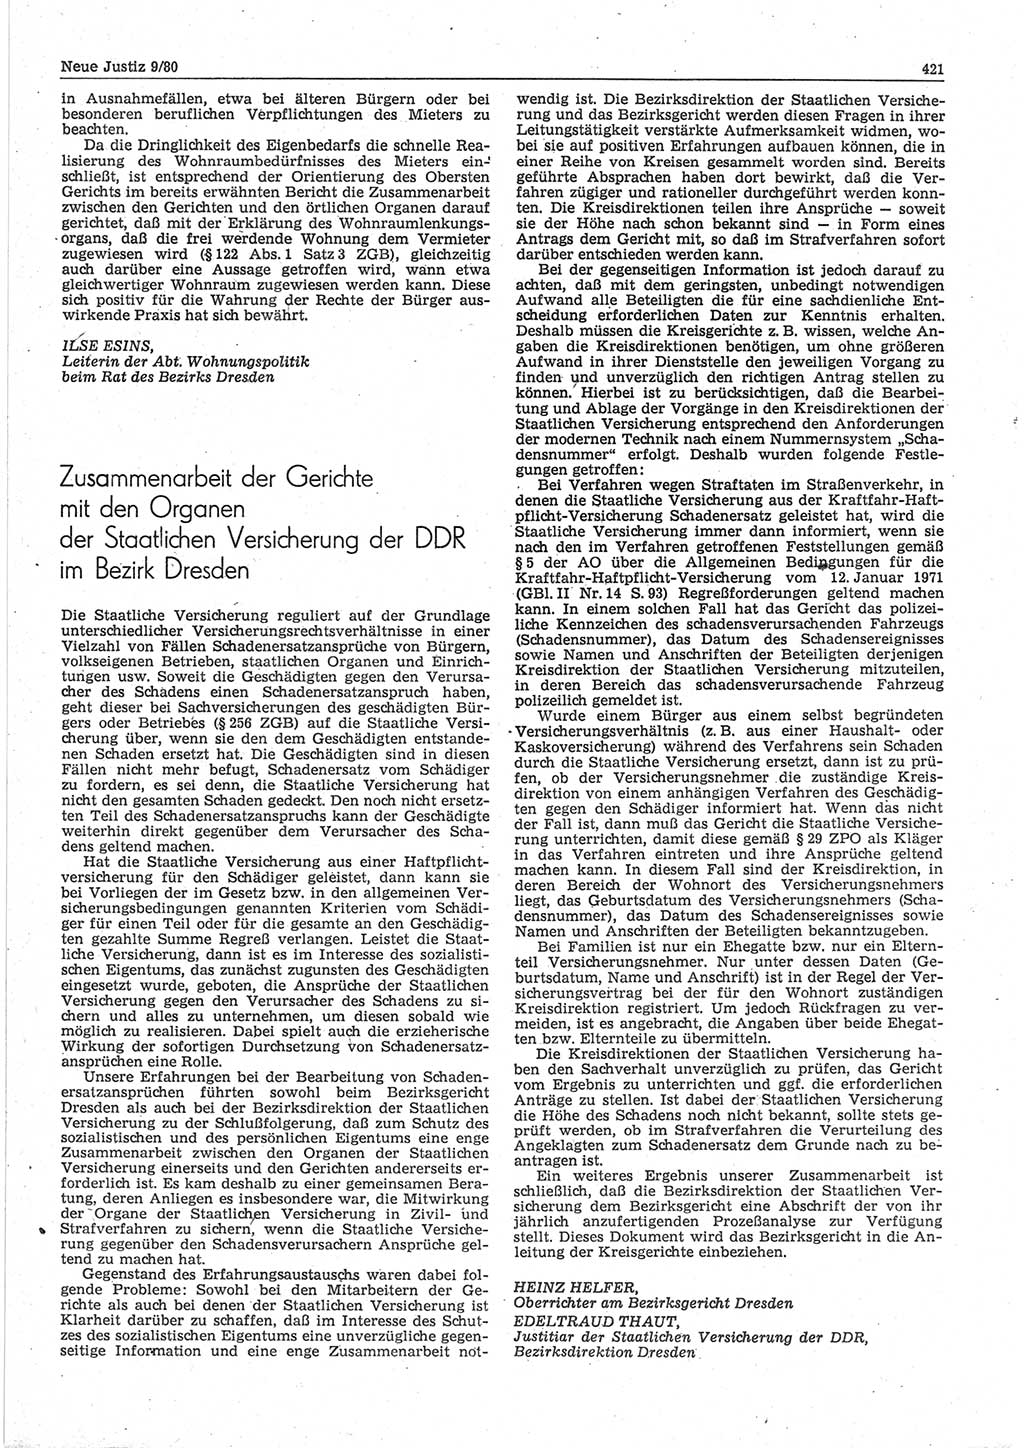 Neue Justiz (NJ), Zeitschrift für sozialistisches Recht und Gesetzlichkeit [Deutsche Demokratische Republik (DDR)], 34. Jahrgang 1980, Seite 421 (NJ DDR 1980, S. 421)